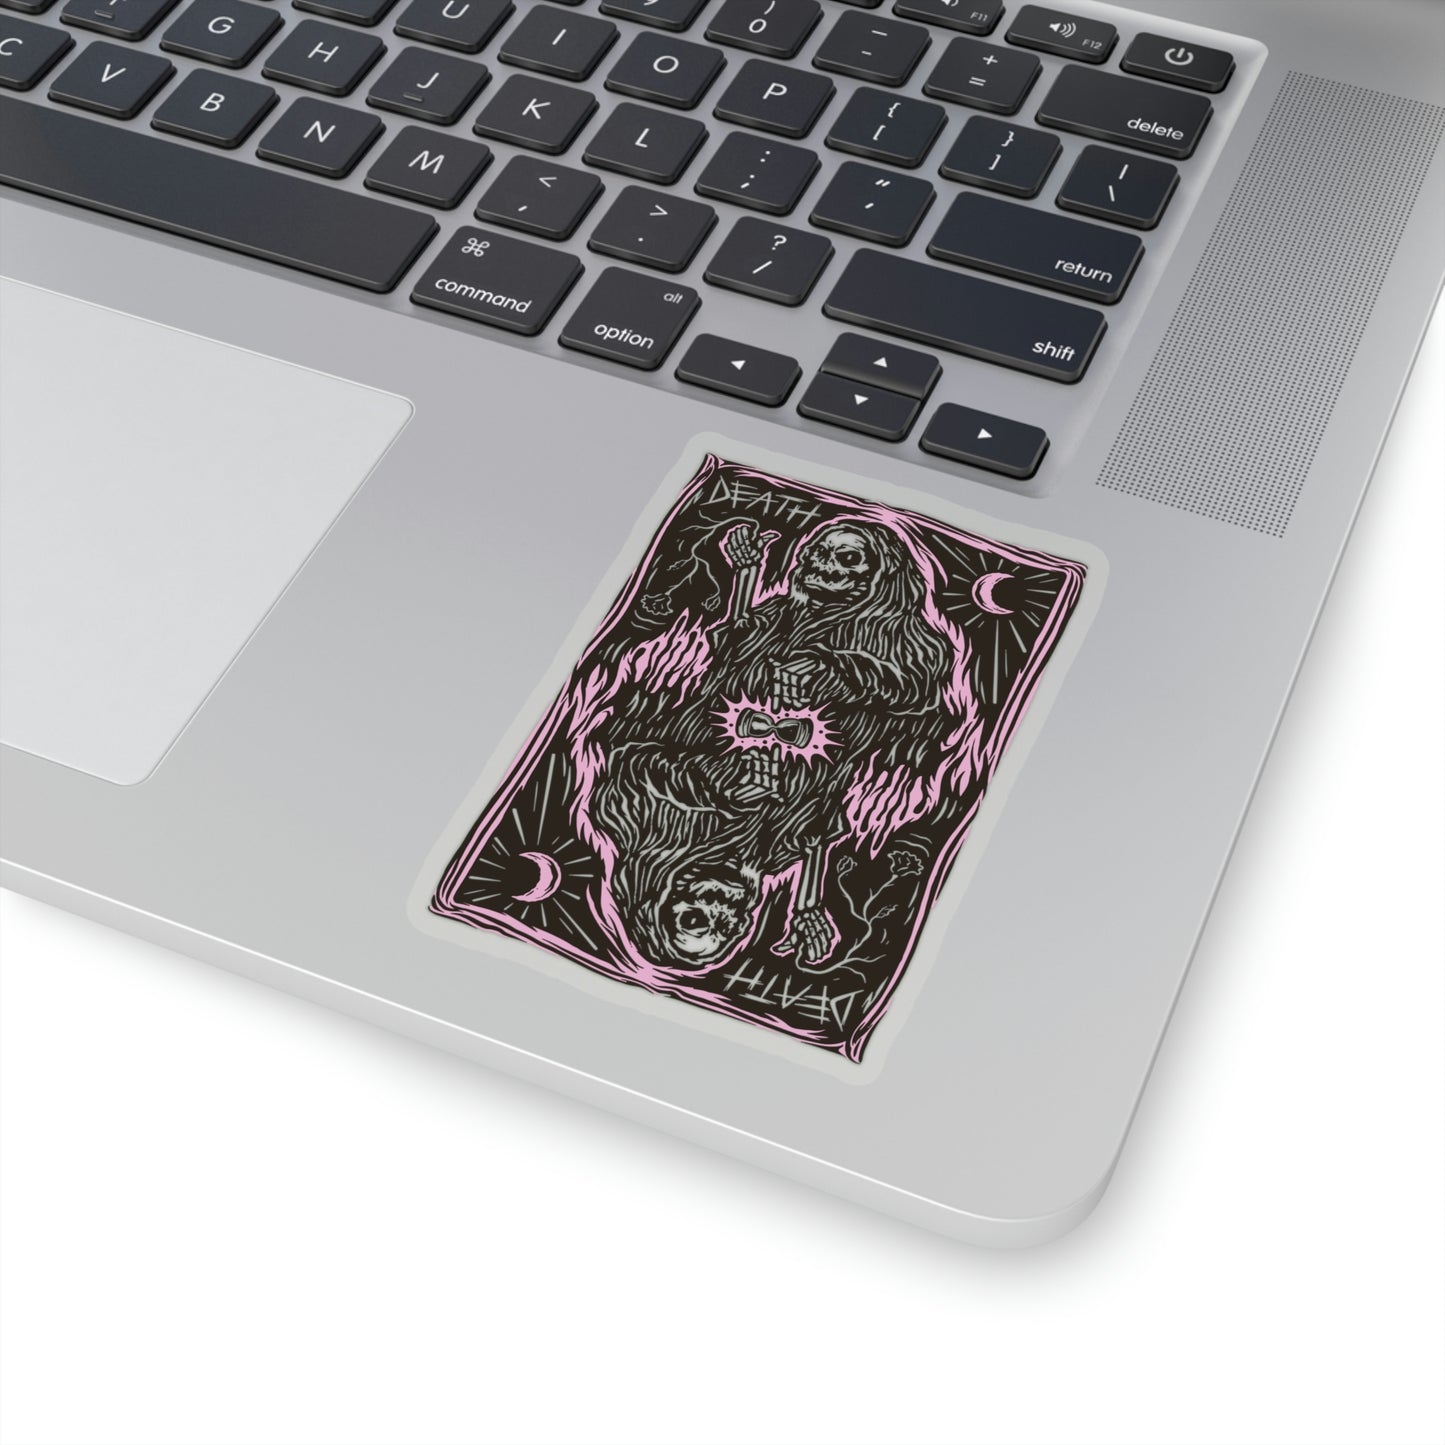 Goth Aesthetic Grim Reaper Card Sticker